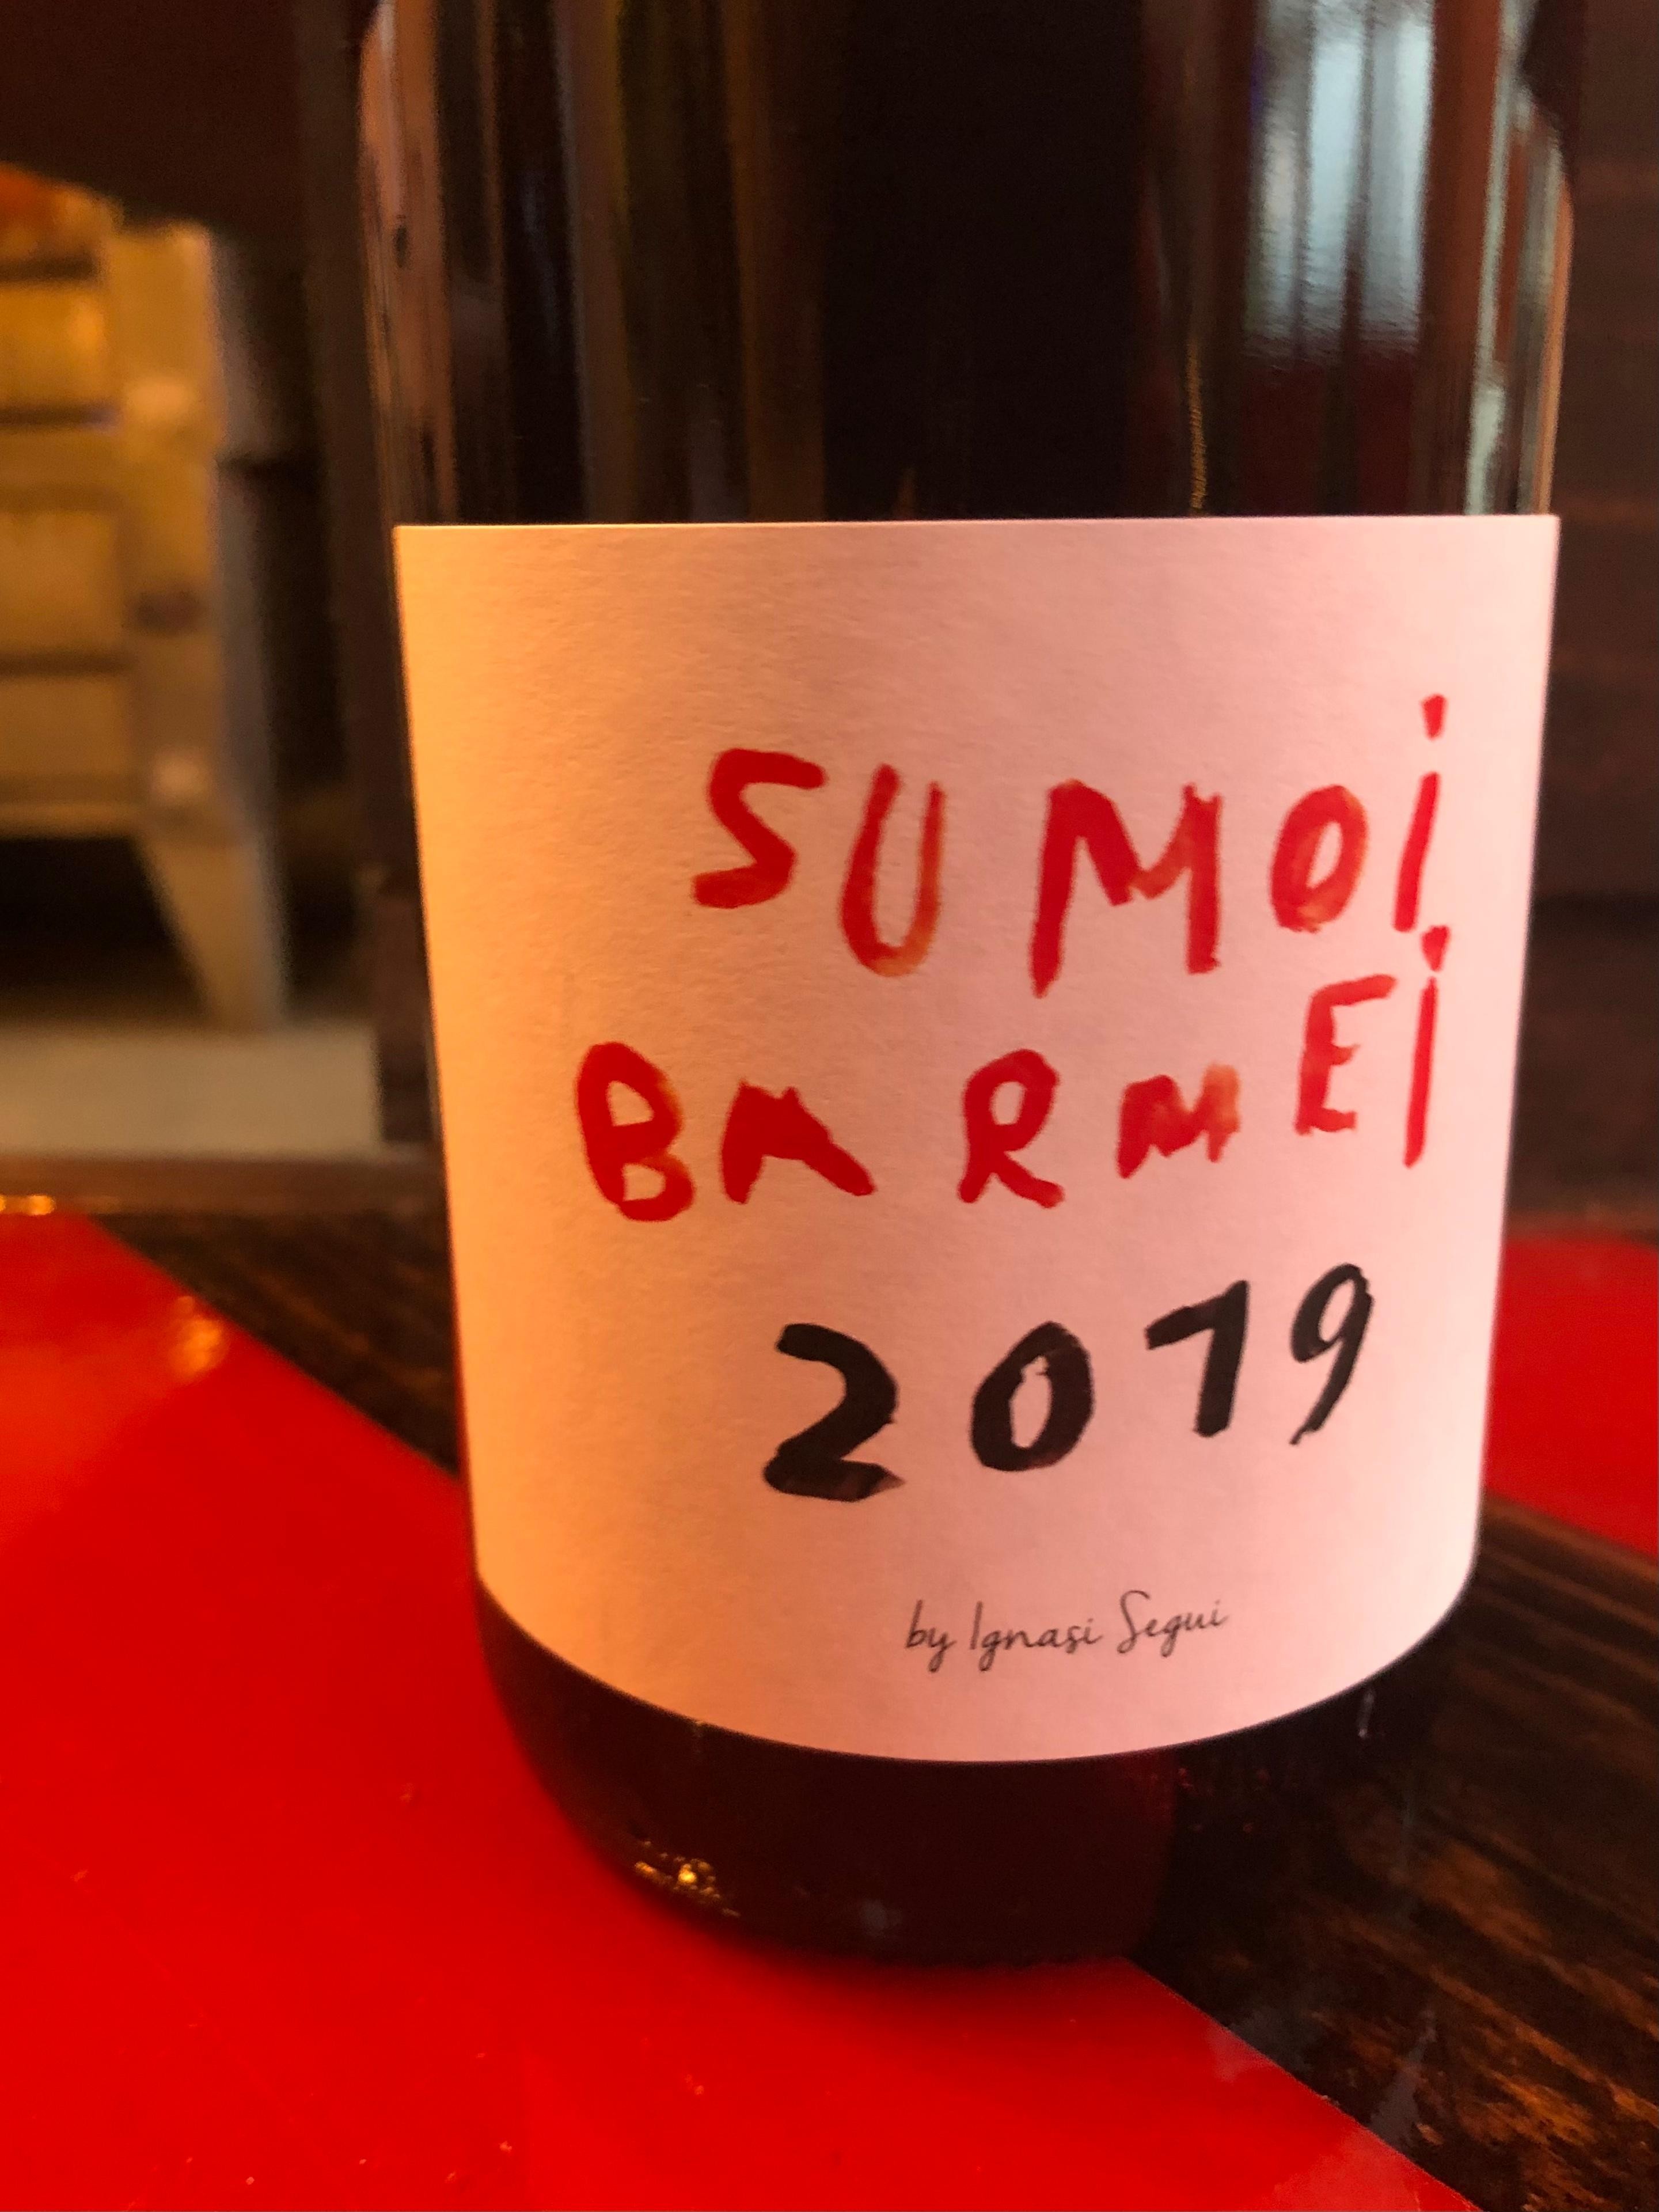 Vinyes Singulars, Sumoll Barmei 2019